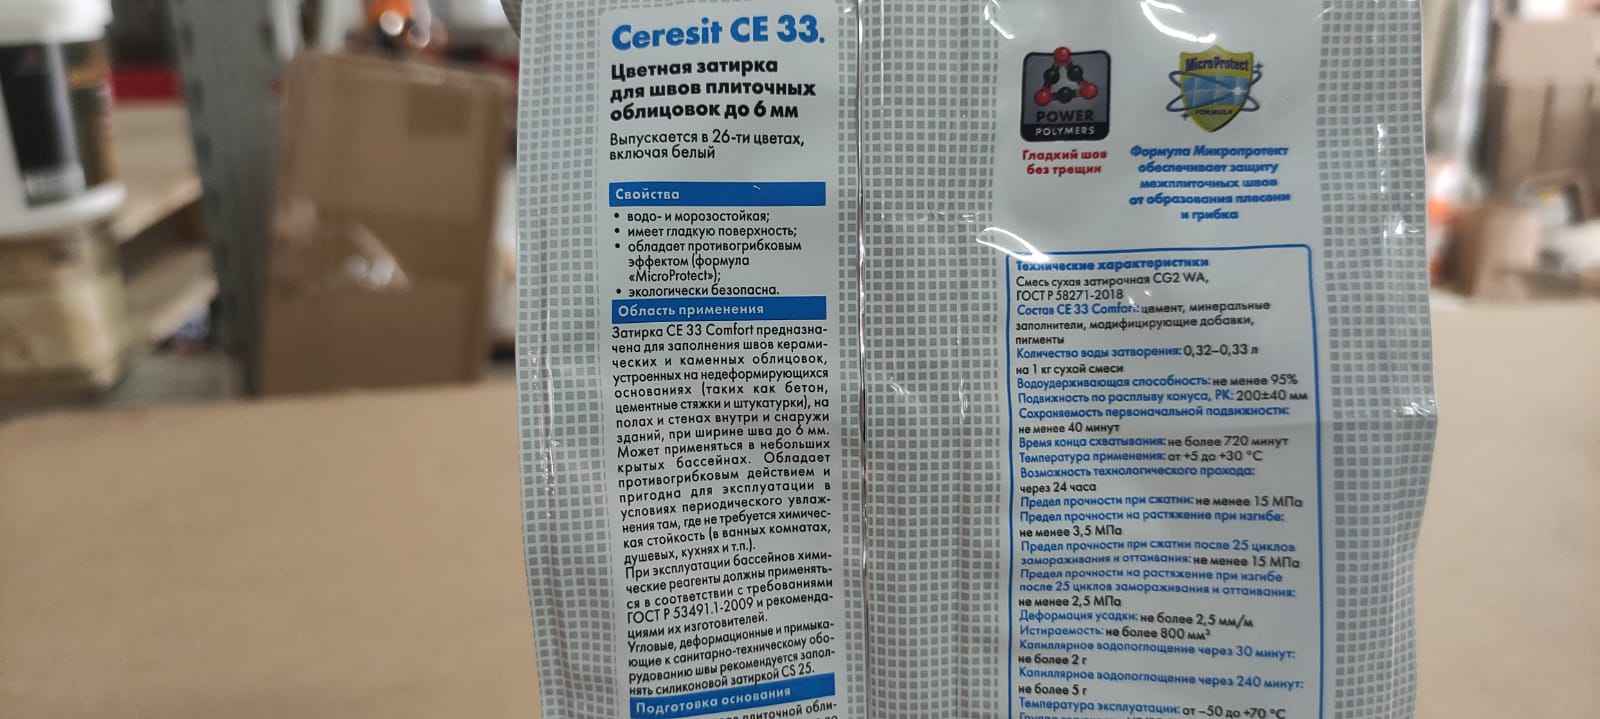 Затирка для швов 1-6 мм Ceresit / Церезит СЕ 33 Comfort 2 кг (цвет: Багамы)								